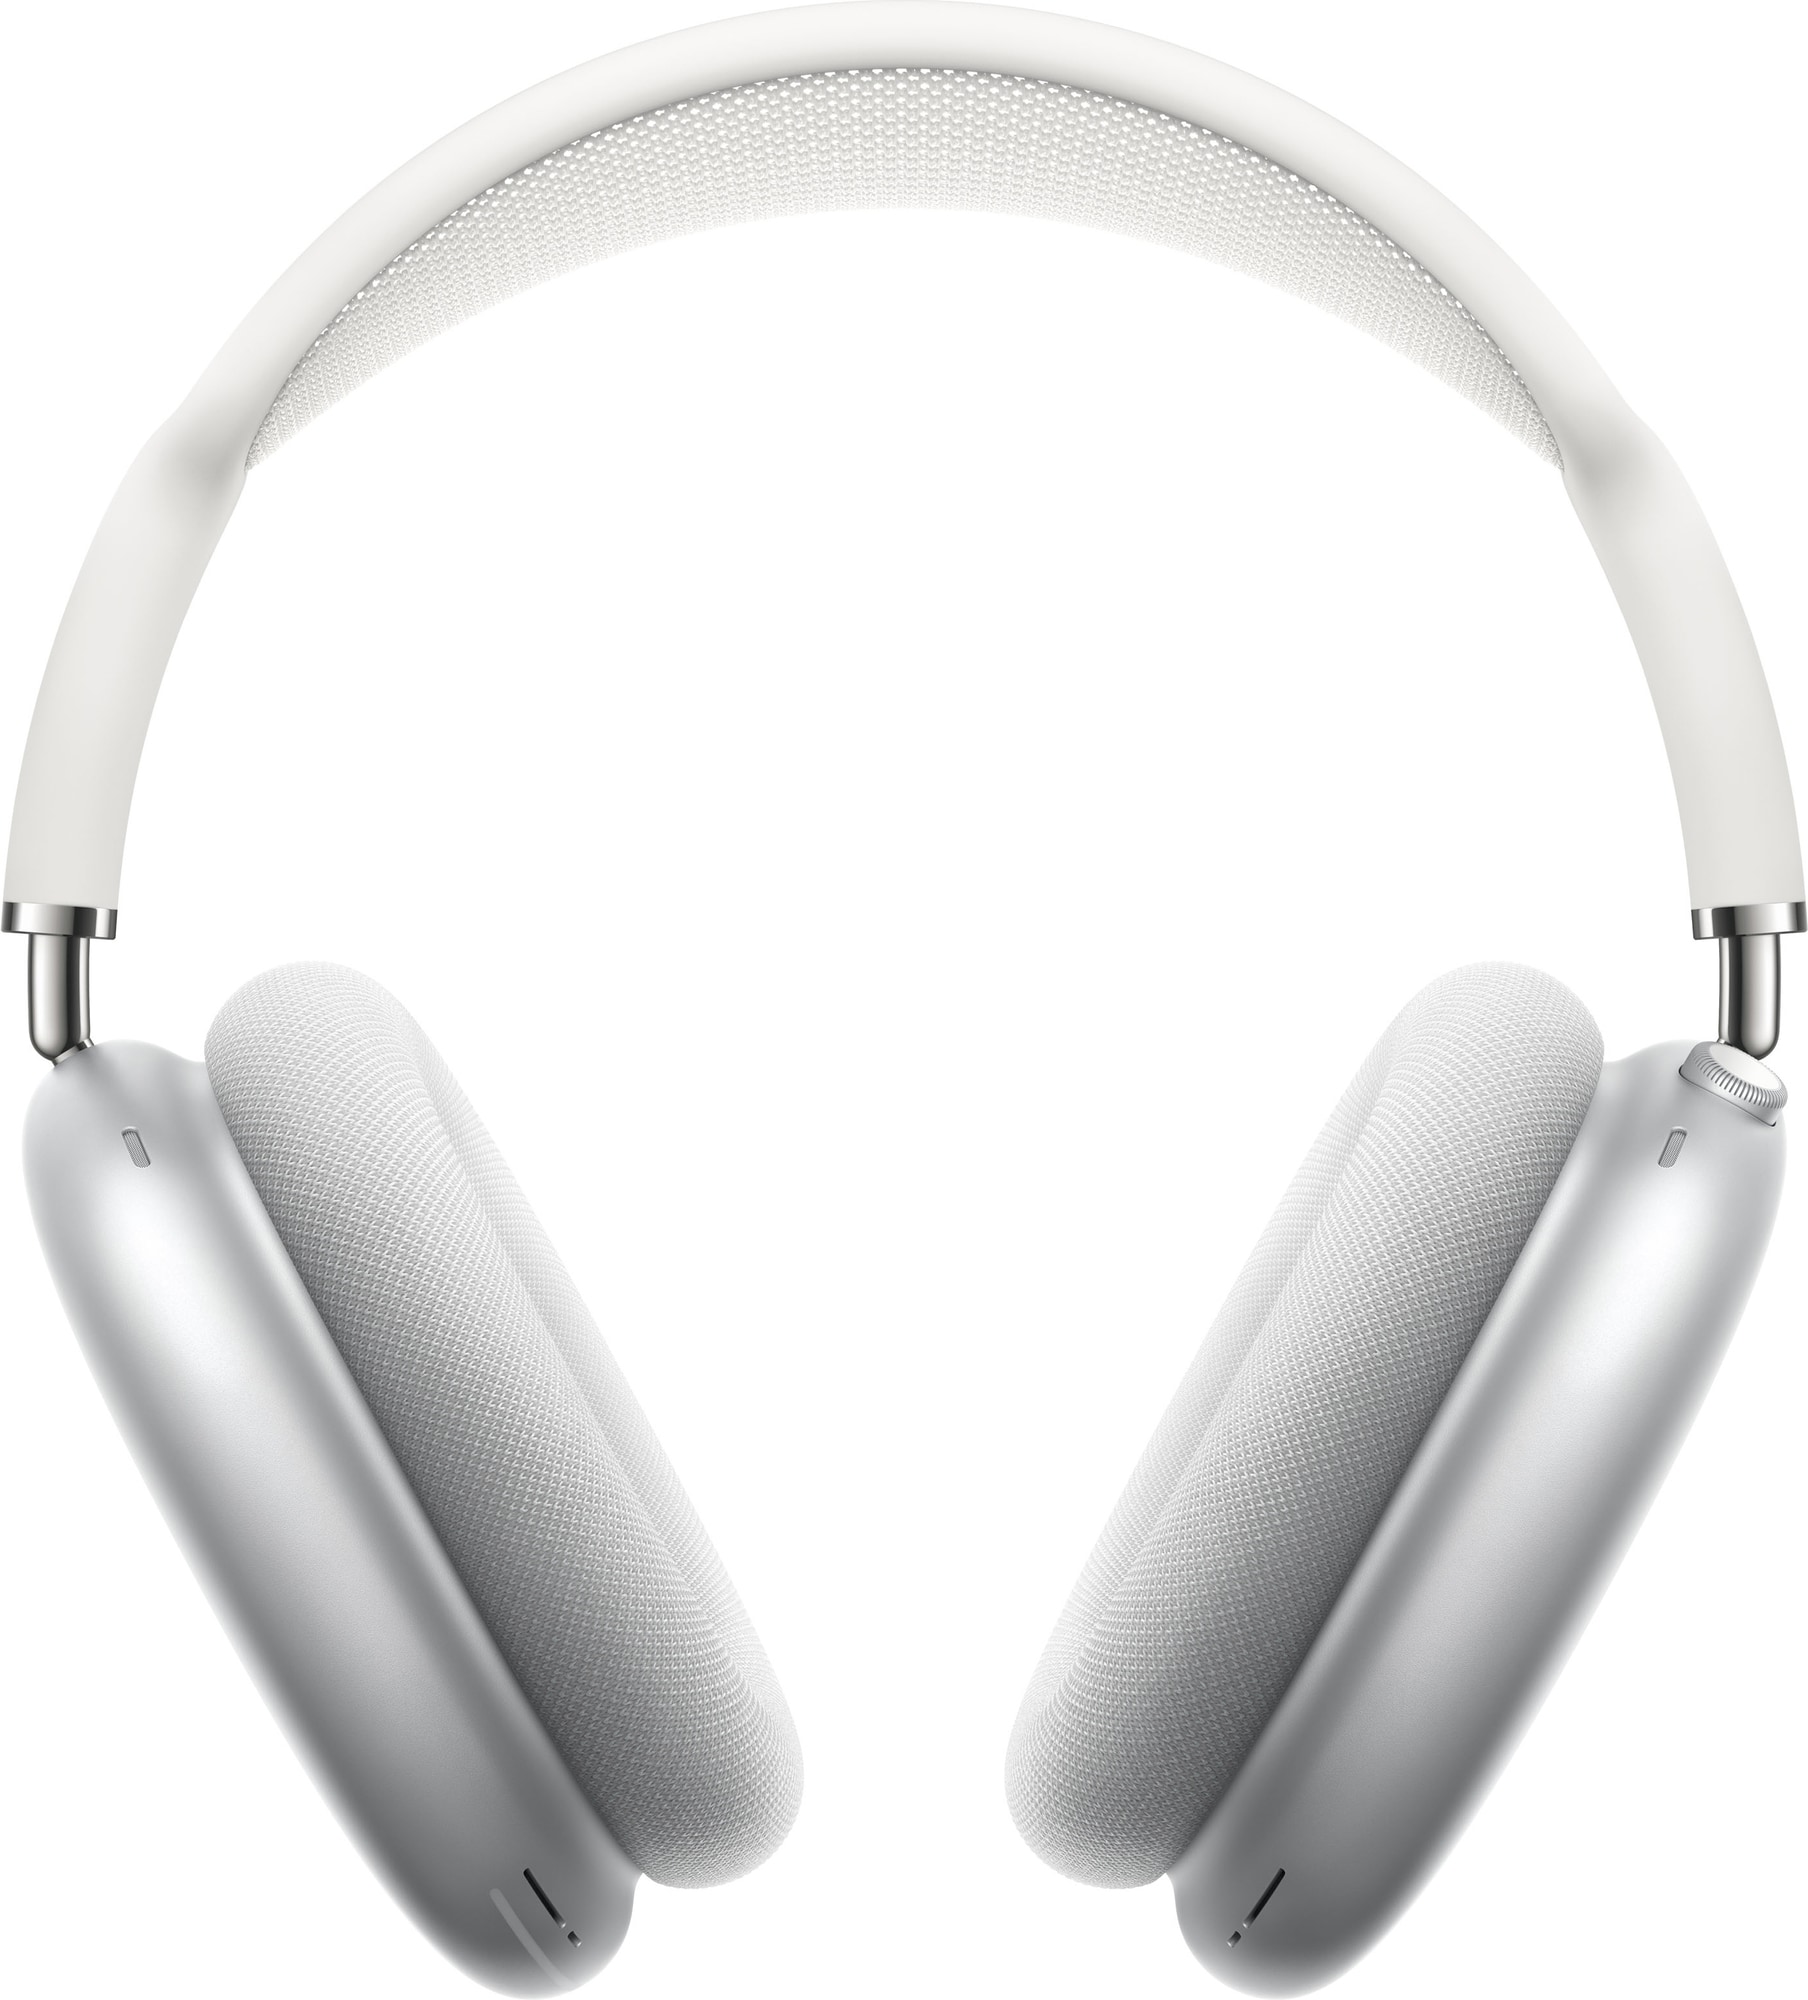 Apple AirPods Max trådløse around-ear hodetelefoner (sølv) - Hodetelefoner  - Elkjøp